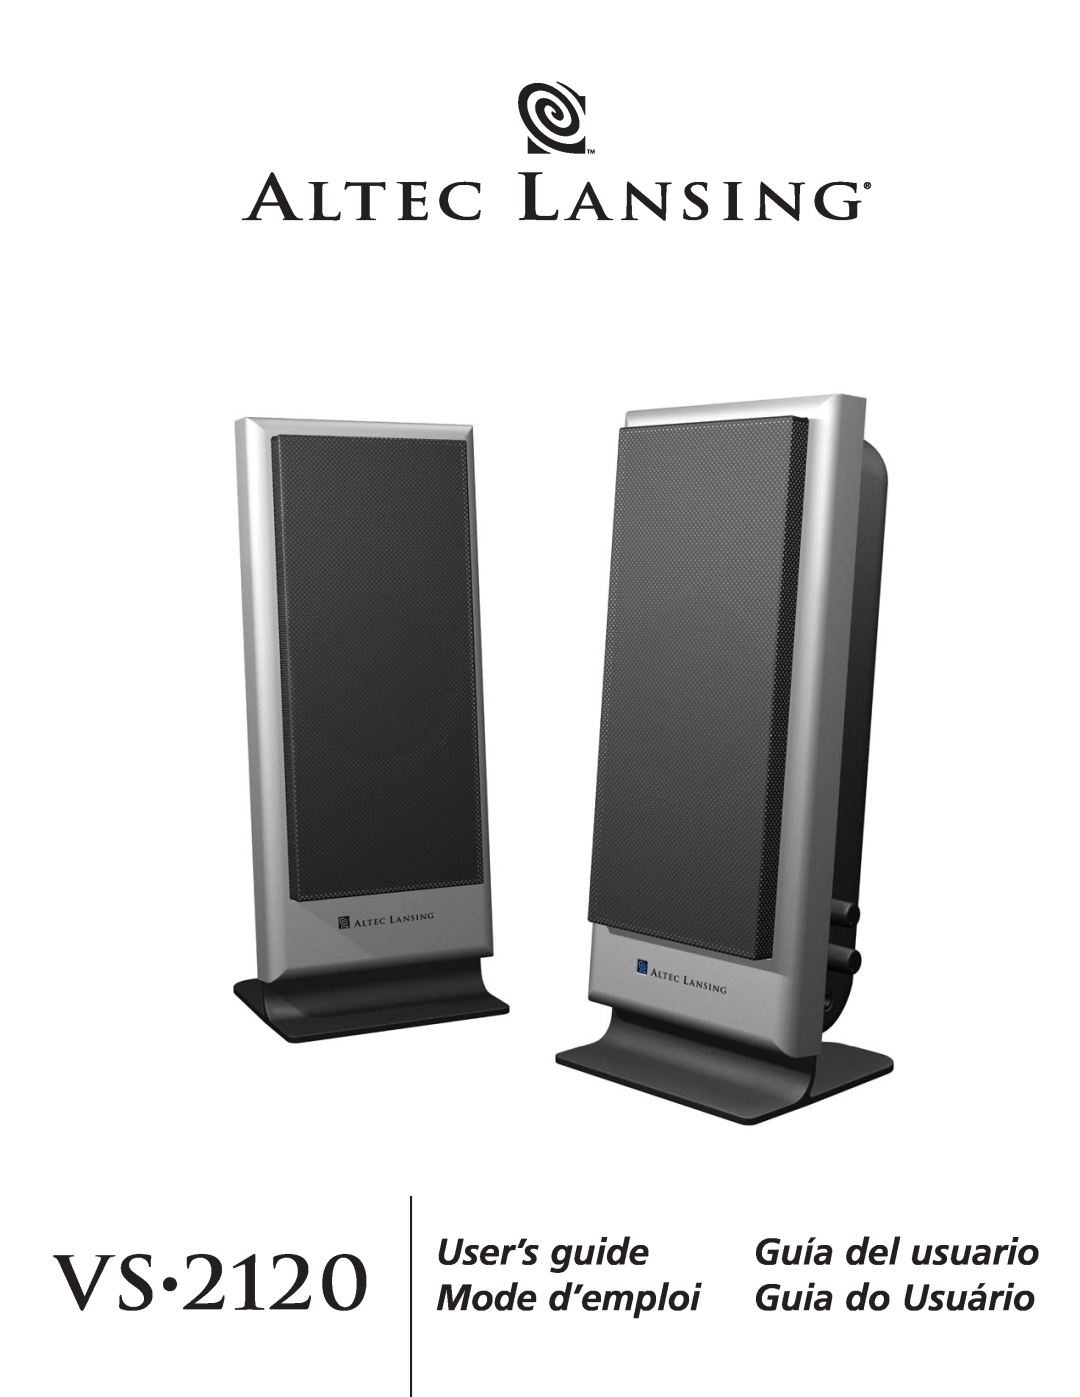 Altec Lansing VS2120 manual Vs, User’s guide, Mode d’emploi, Guía del usuario, Guia do Usuário 